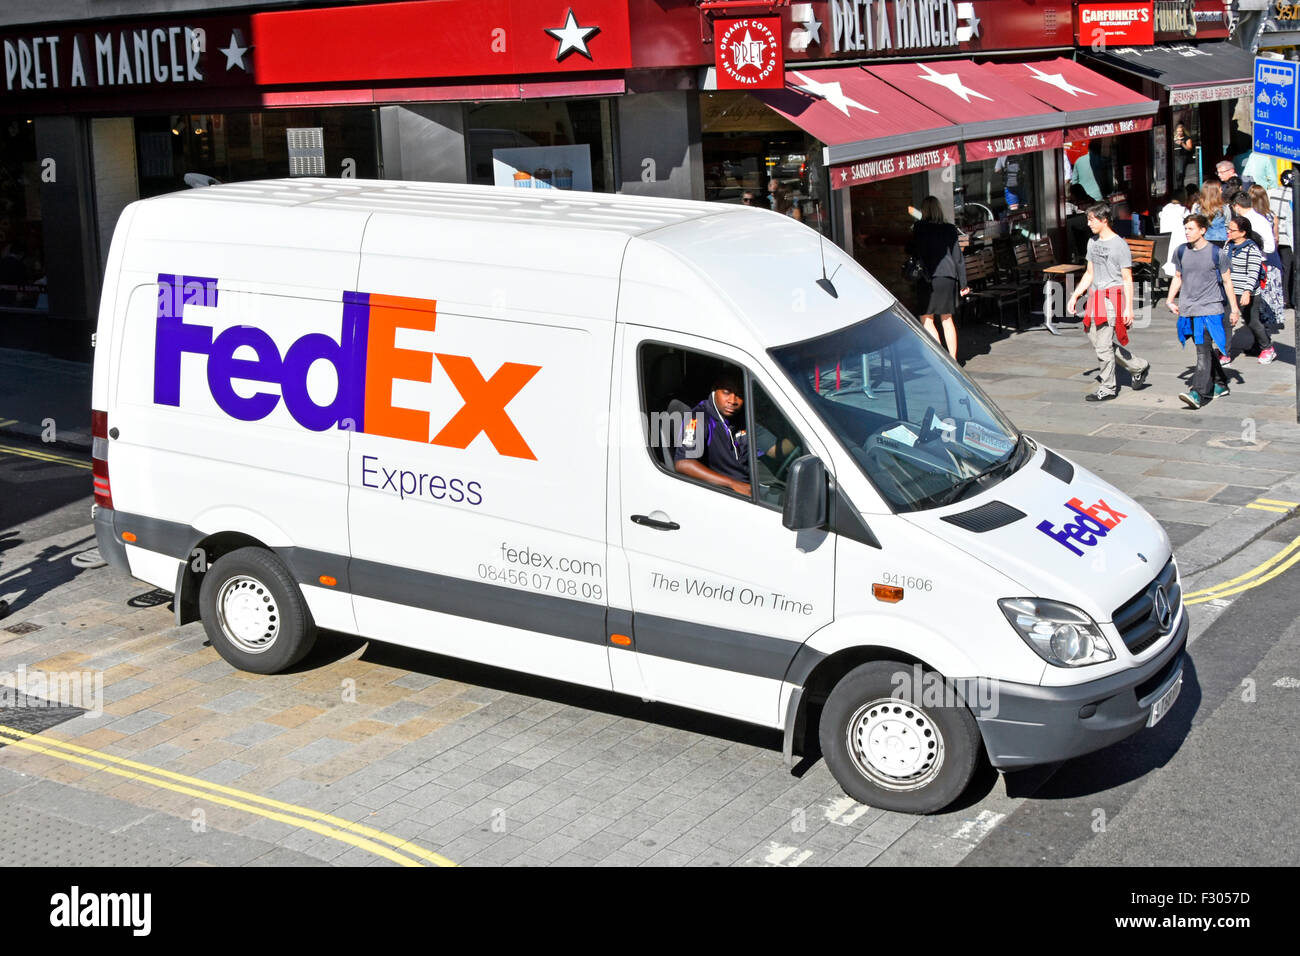 Luftaufnahme Blick auf weißen Fedex Express Pakete Lieferwagen mit Marke Logo & Fahrer in sonnigen Einkaufsstraße Szene Strand London England UK Stockfoto